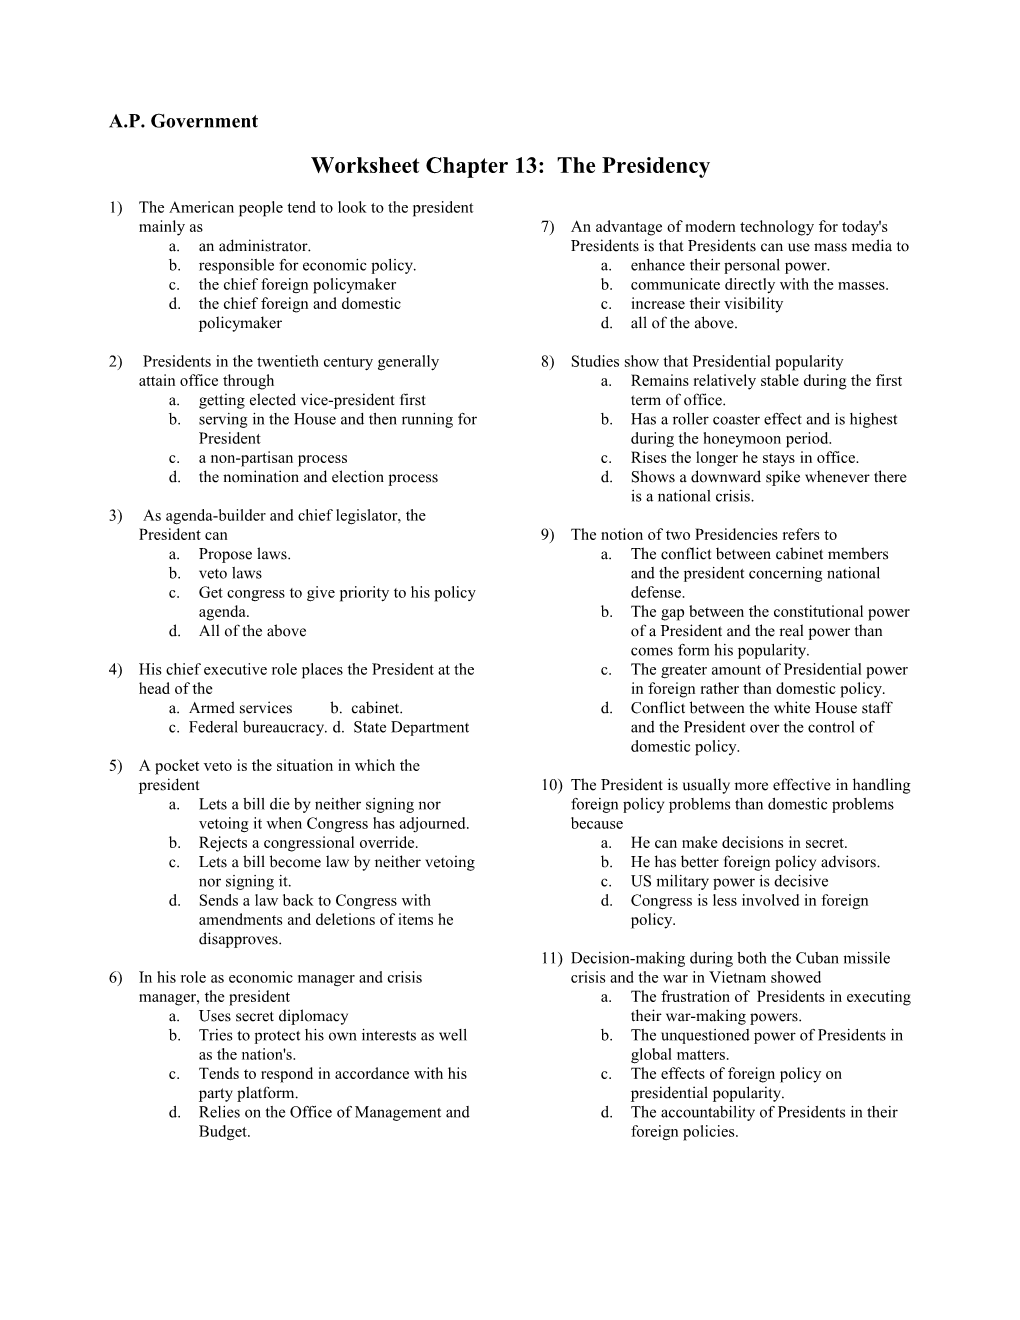 Worksheet Chapter 13: the Presidency